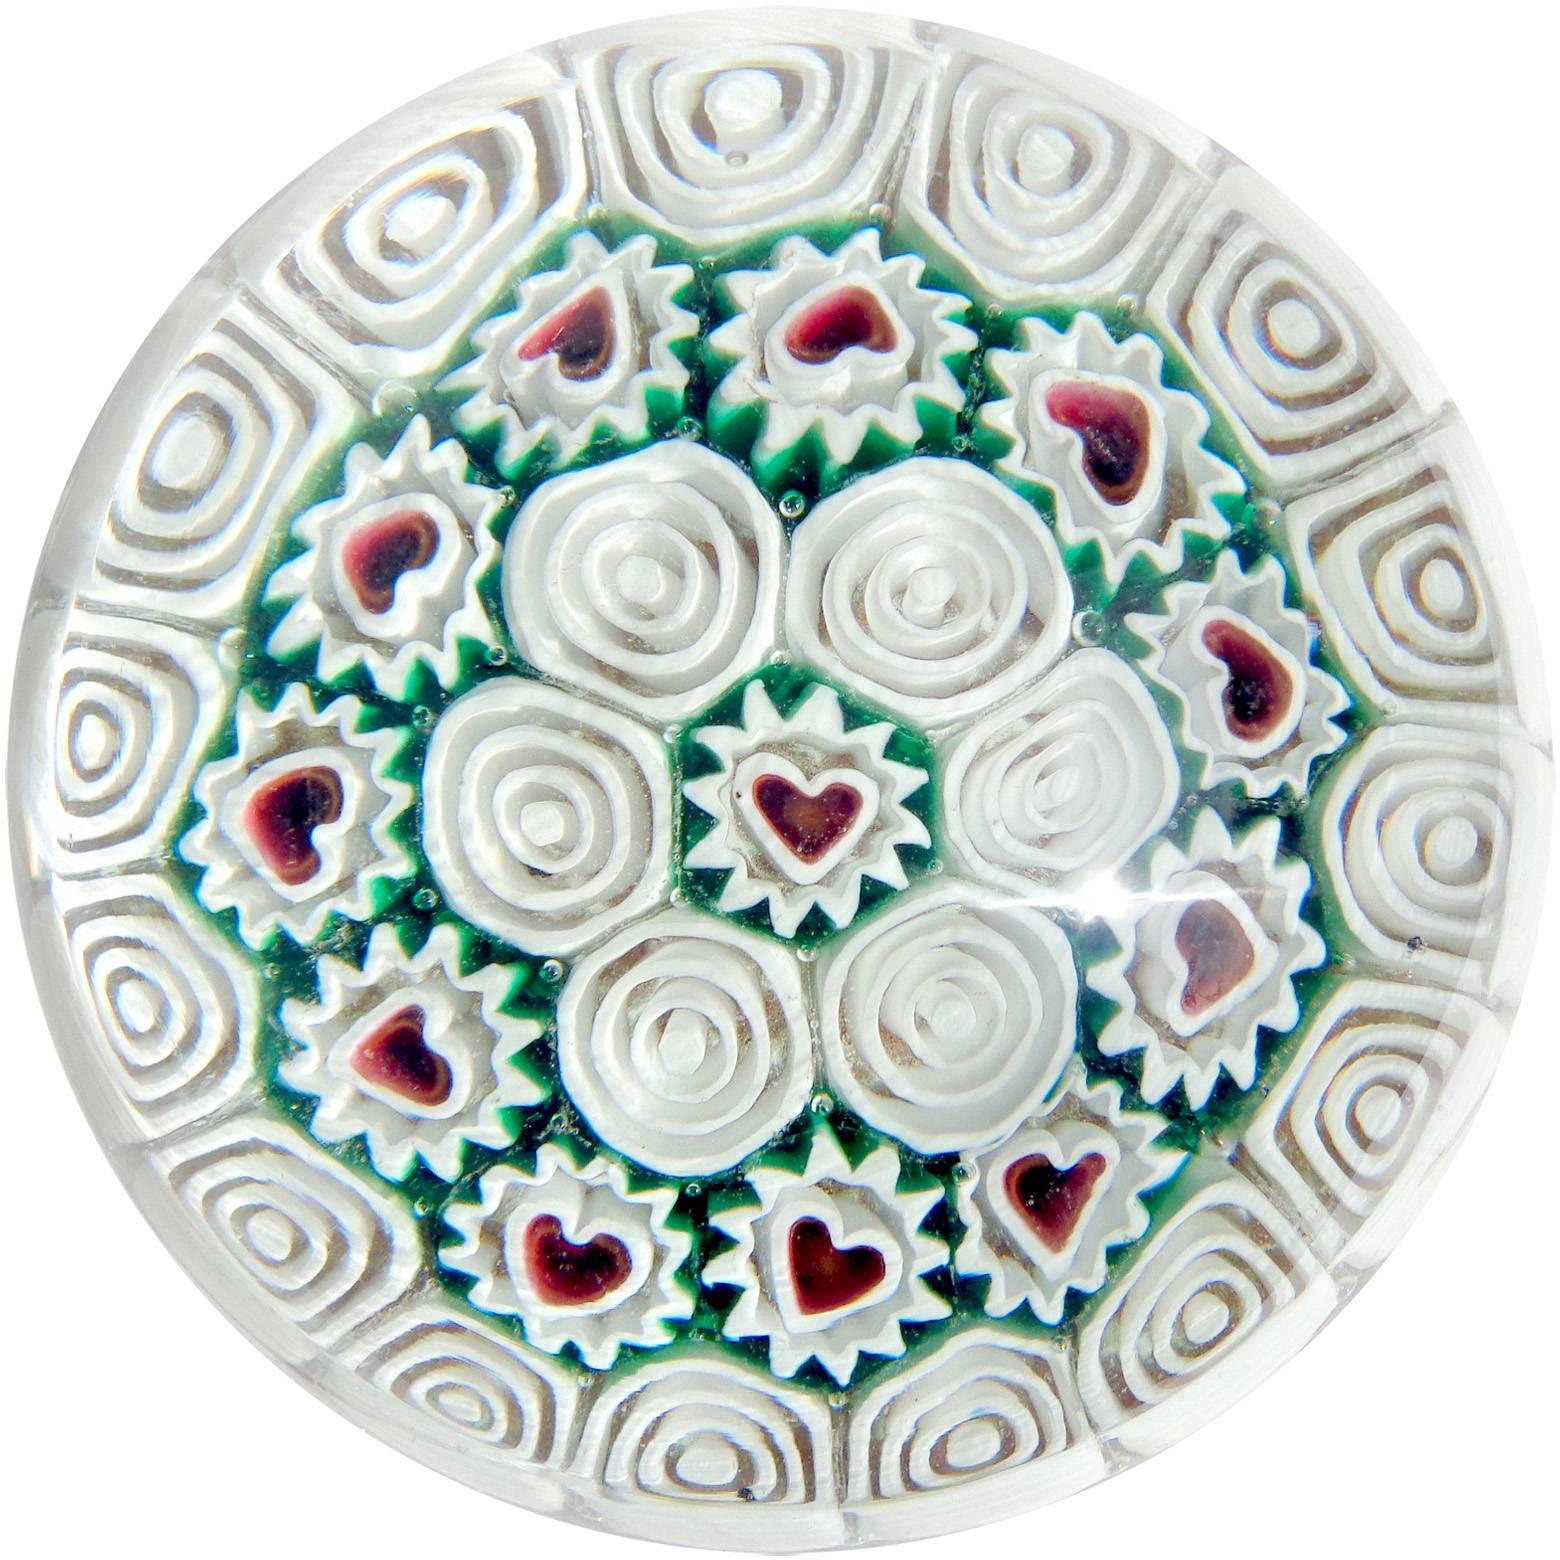 Fratelli Toso Murano Millefiori Heart Mosaic Italian Art Glass Paperweight